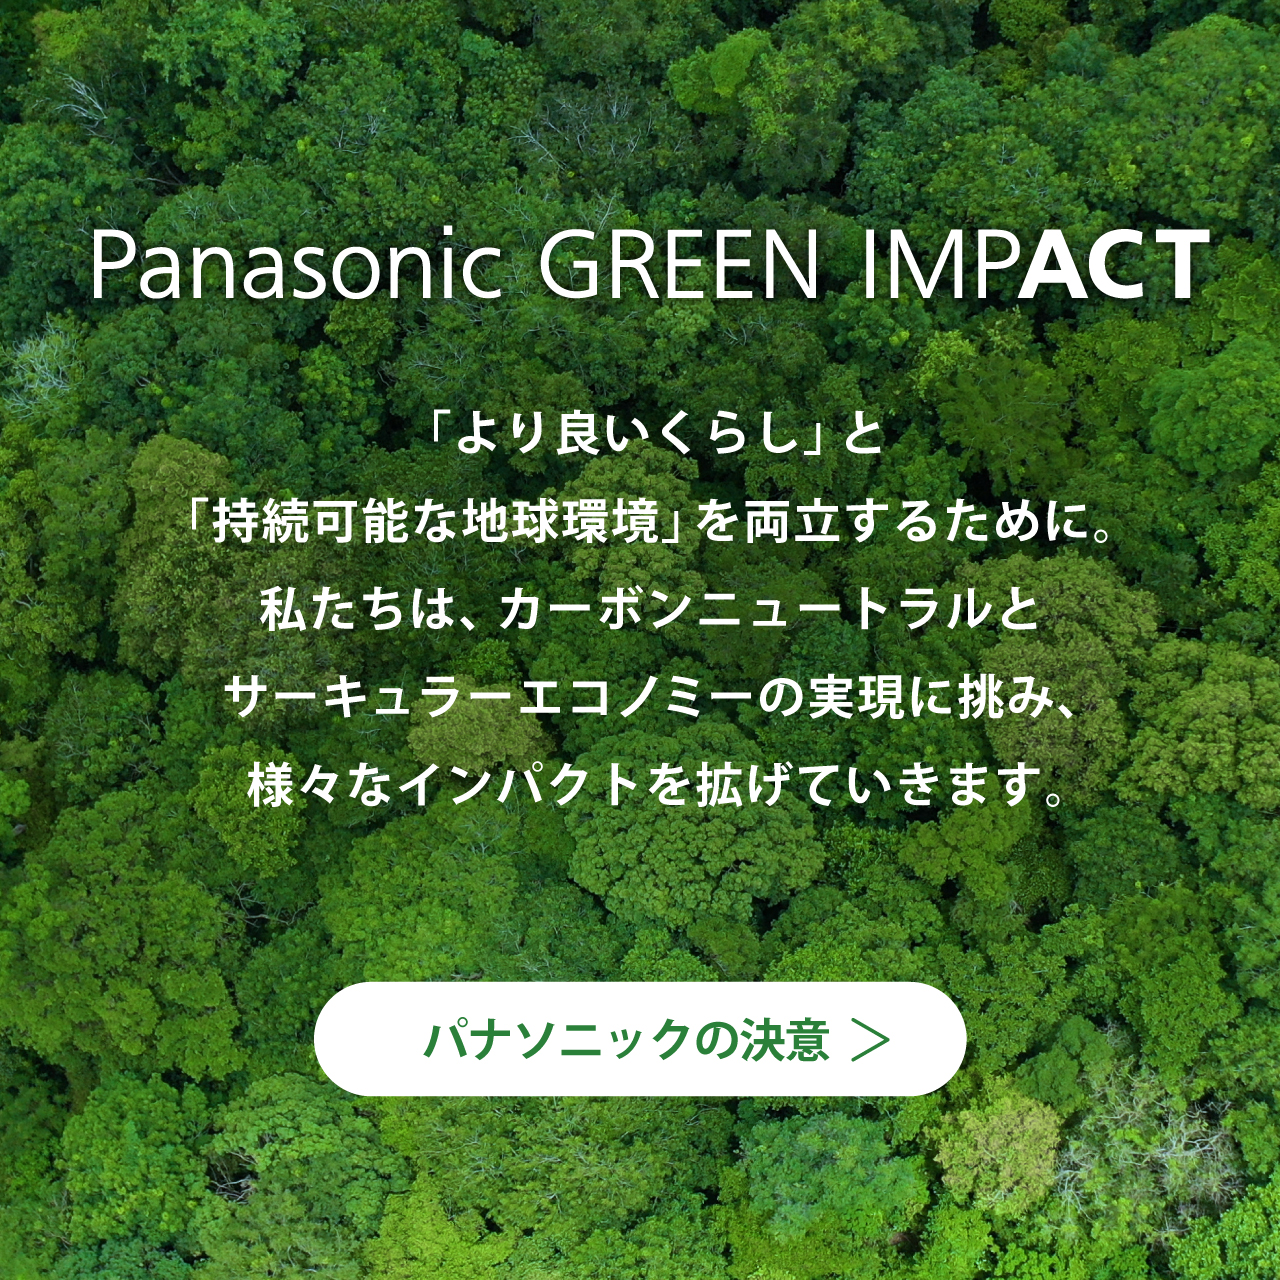 Panasonic GREEN IMPACT 「より良いくらし」と 「持続可能な地球環境」を両立するために。 私たちは、カーボンニュートラルと サーキュラーエコノミーの実現に挑み、様々なインパクトを拡げていきます。 パナソニックの決意